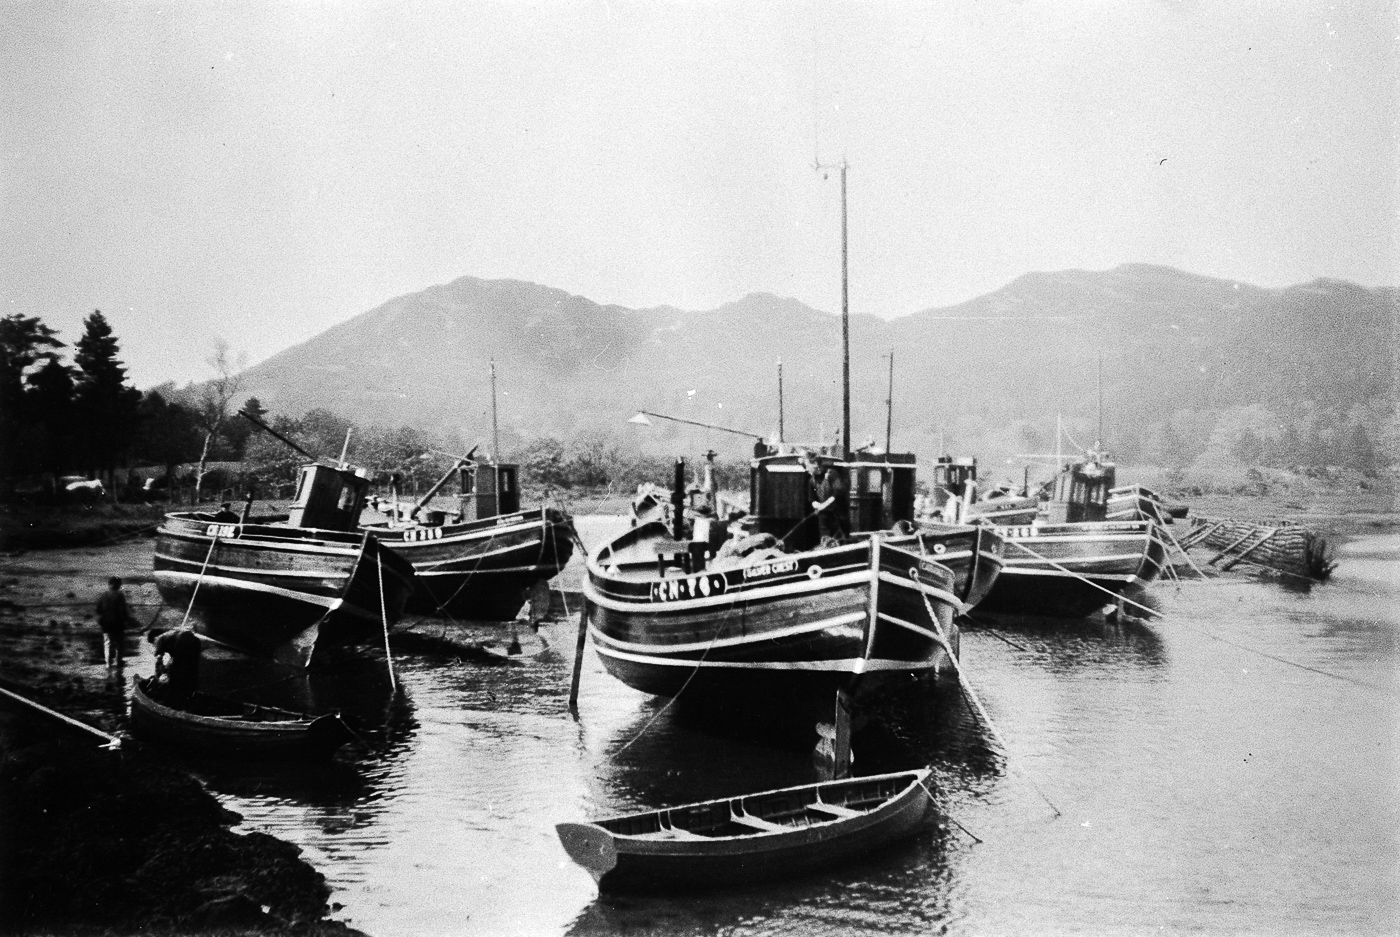 Ringnetters in Carradale, pre 1939